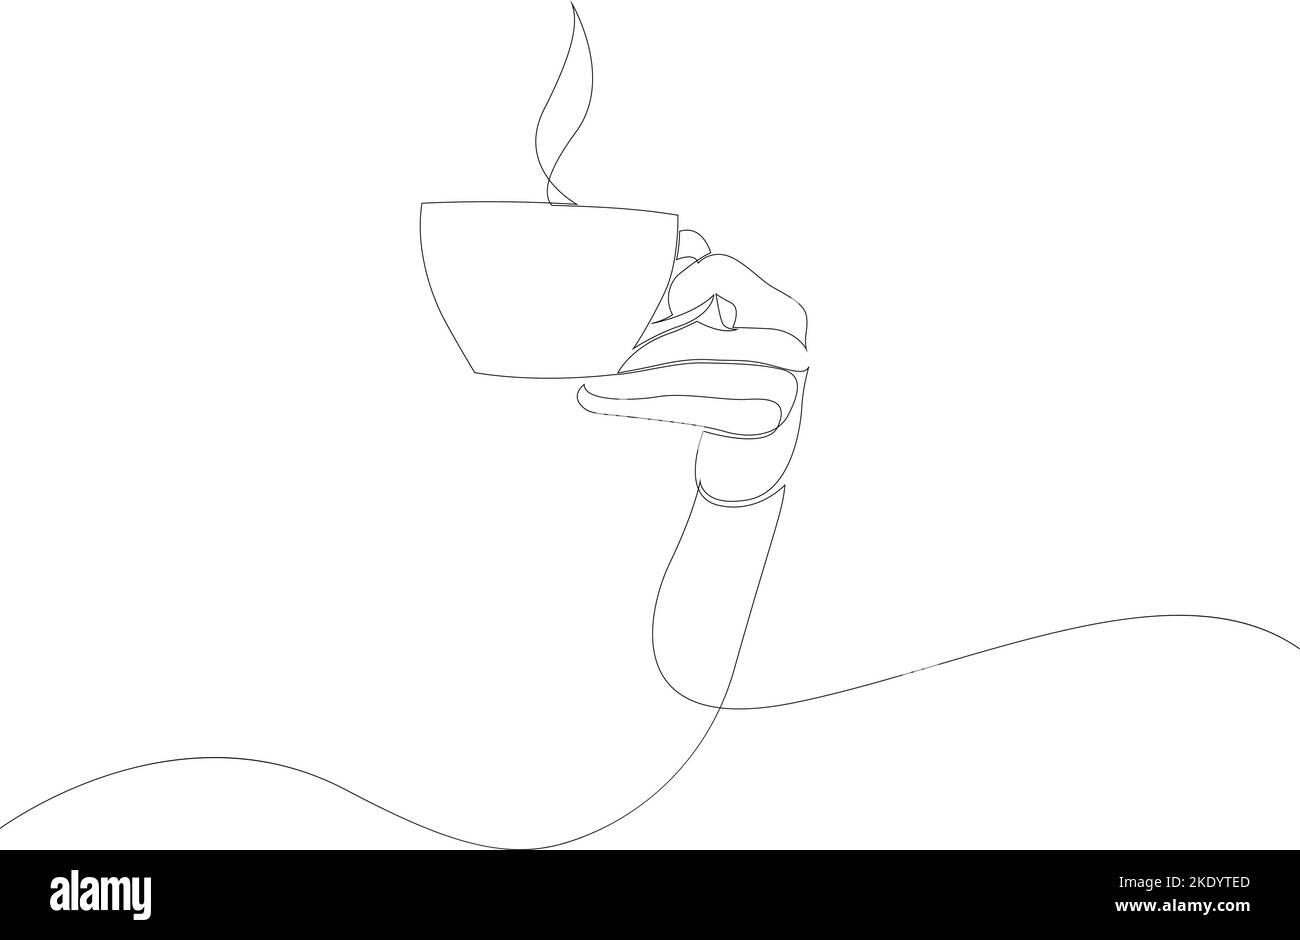 Disegno a linea continua della mano che tiene una tazza di tè o caffè caldo. Illustrazione vettoriale Illustrazione Vettoriale